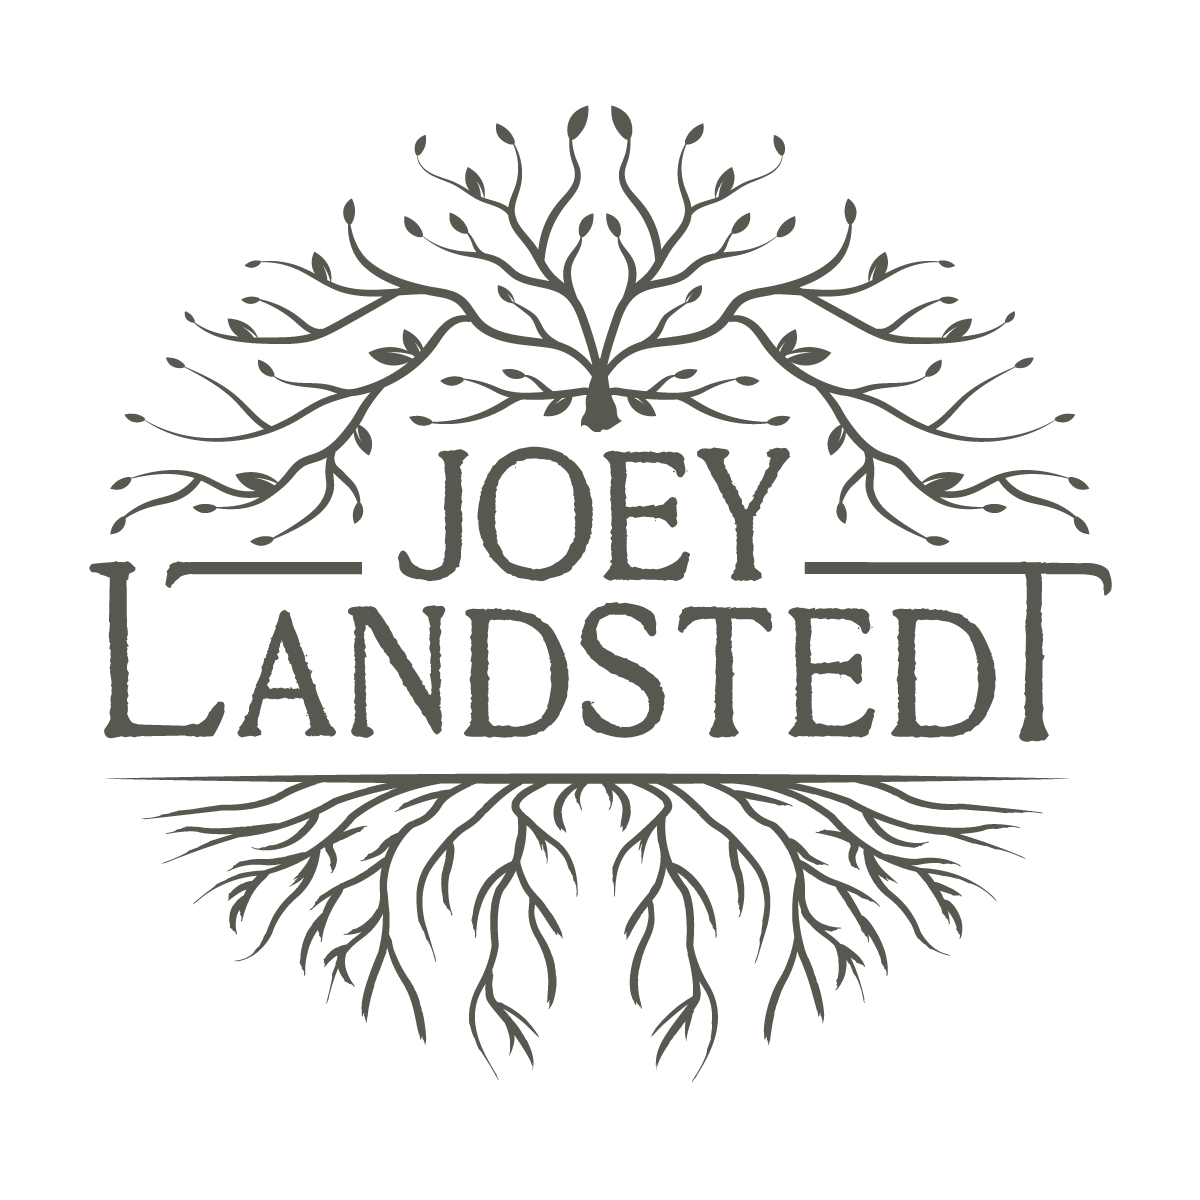 Joey Landstedt